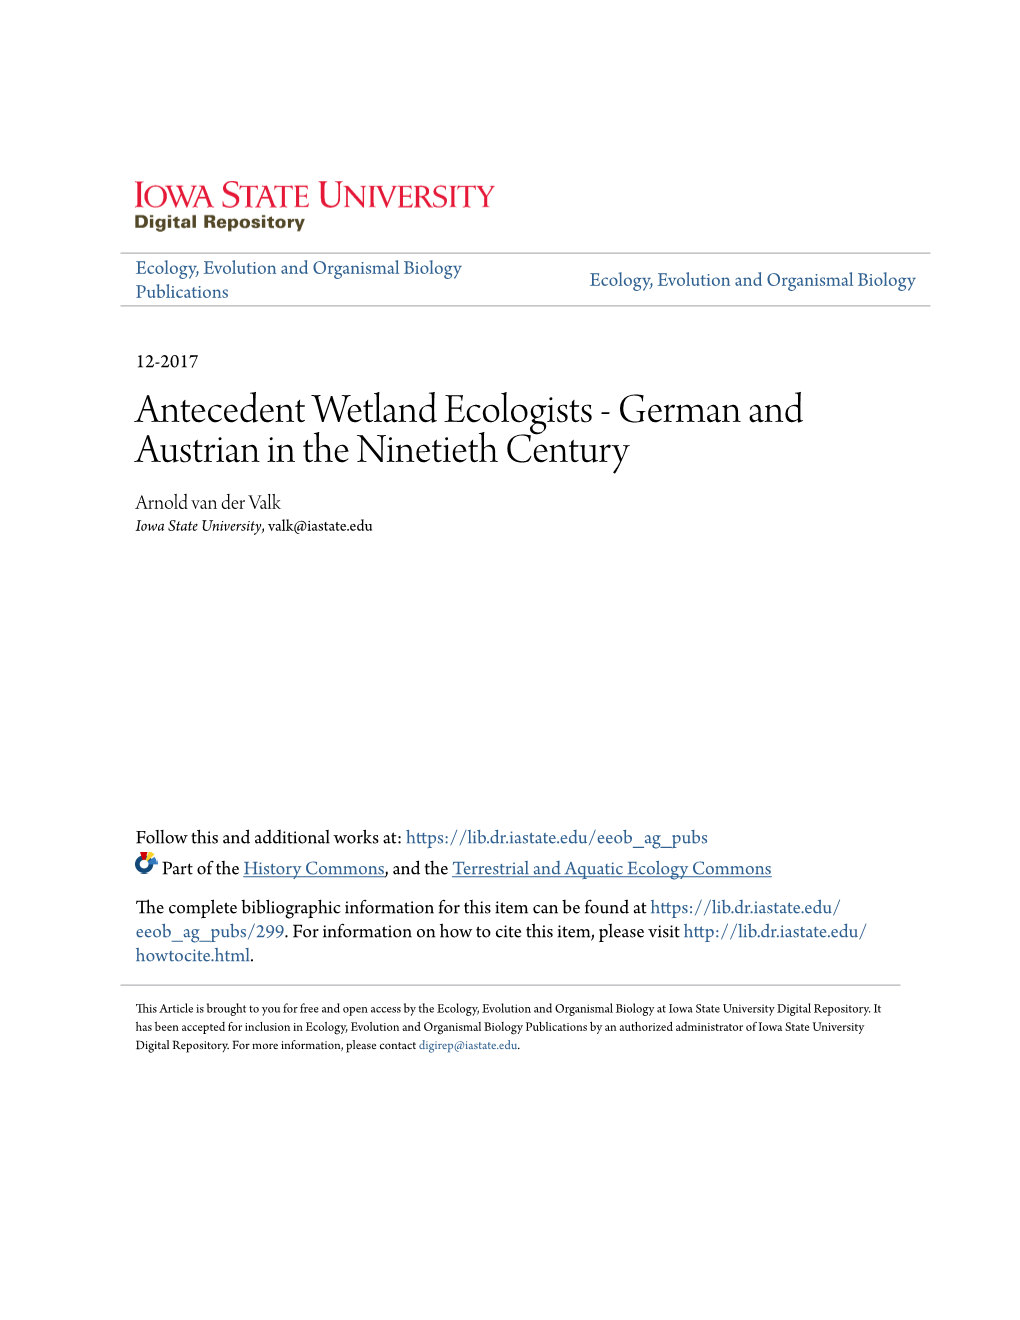 Antecedent Wetland Ecologists - German and Austrian in the Ninetieth Century Arnold Van Der Valk Iowa State University, Valk@Iastate.Edu